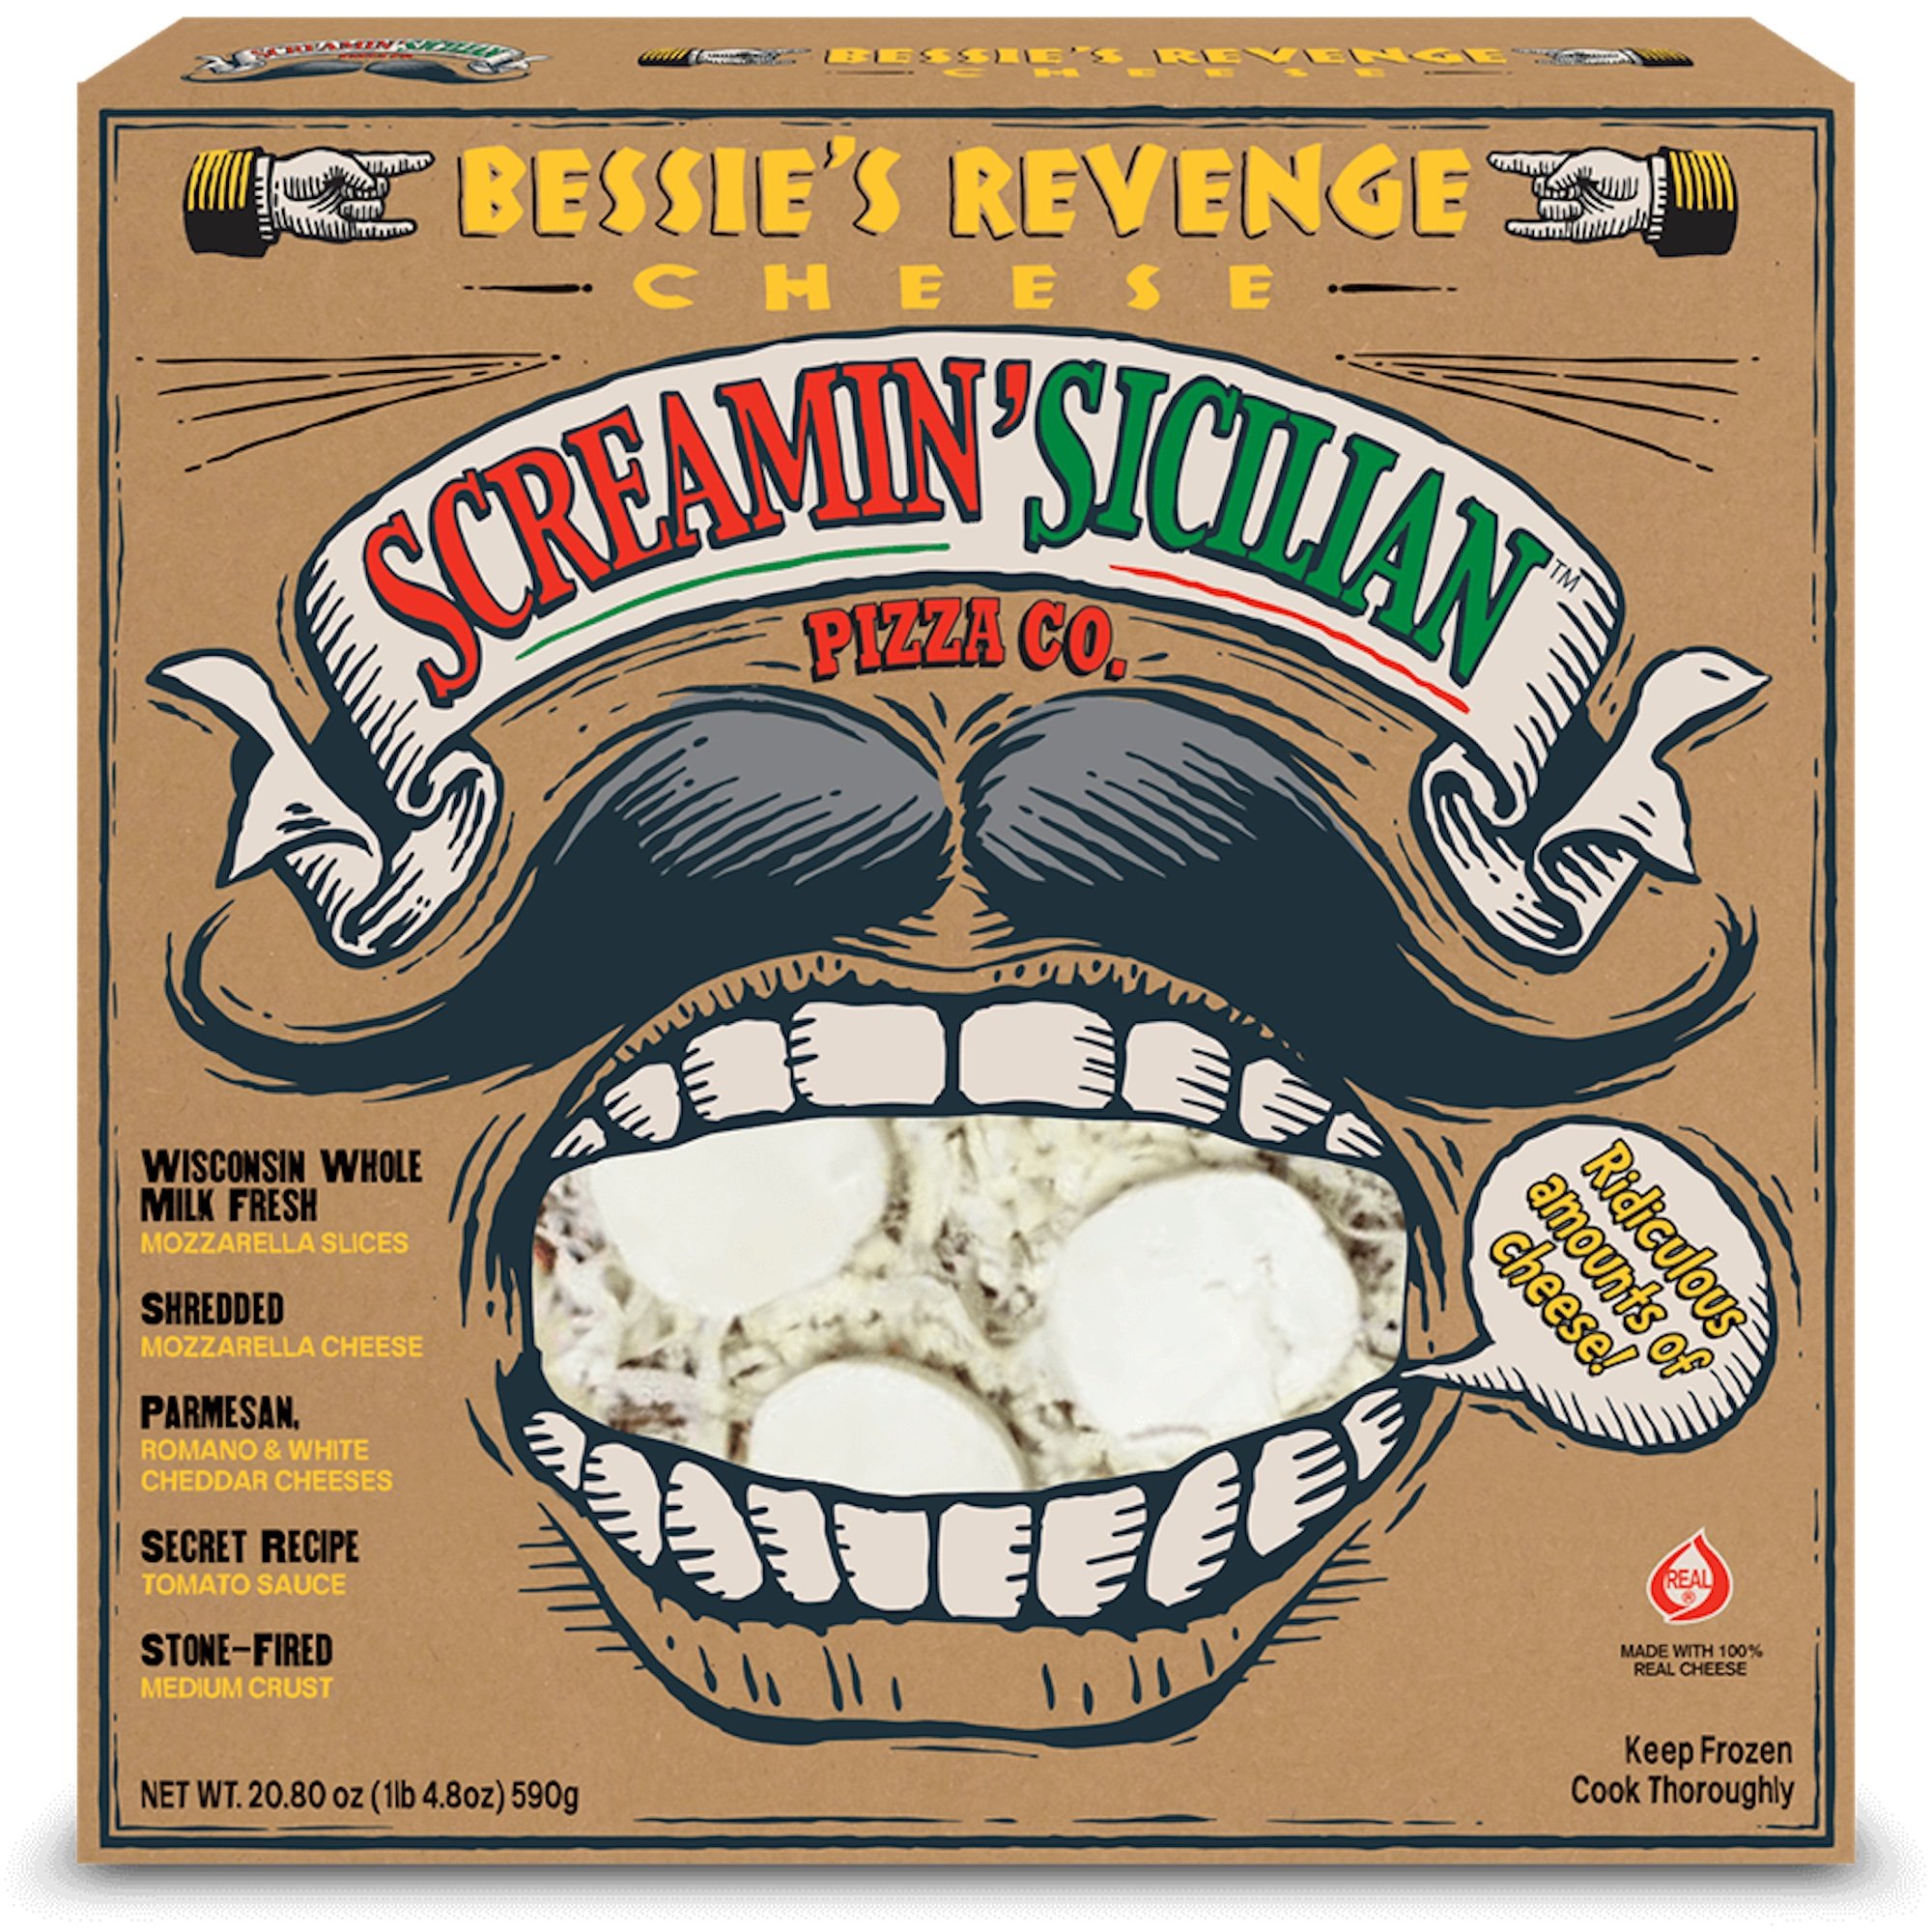 La venganza de Screamin' Sicilian Bessie